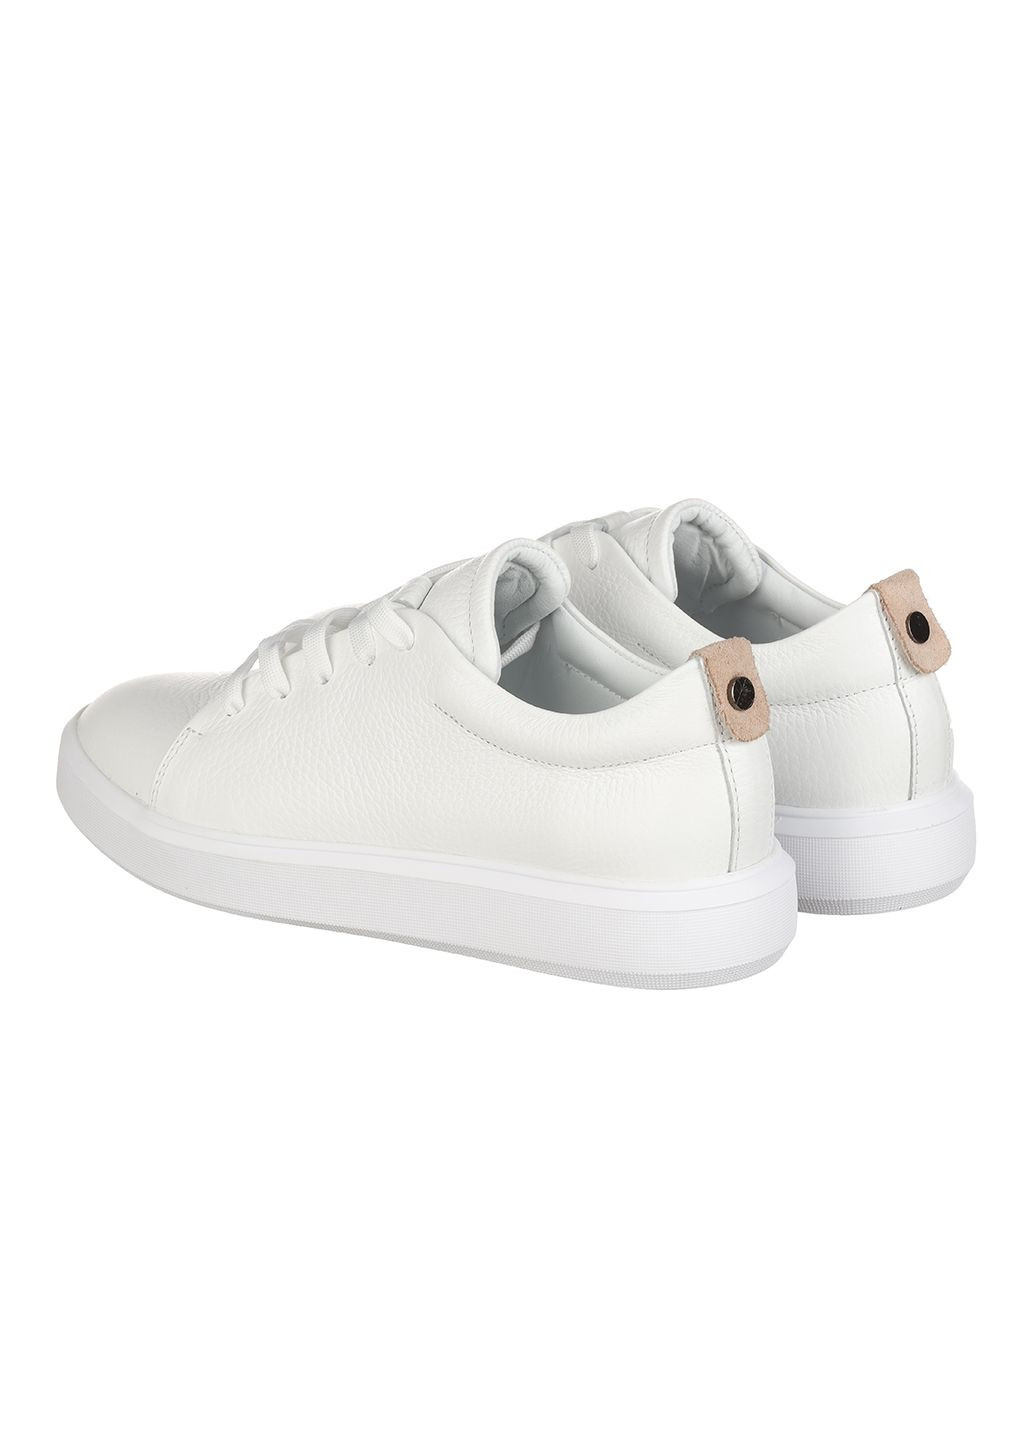 Белые демисезонные женские кроссовки 0131-2314 Rispetto